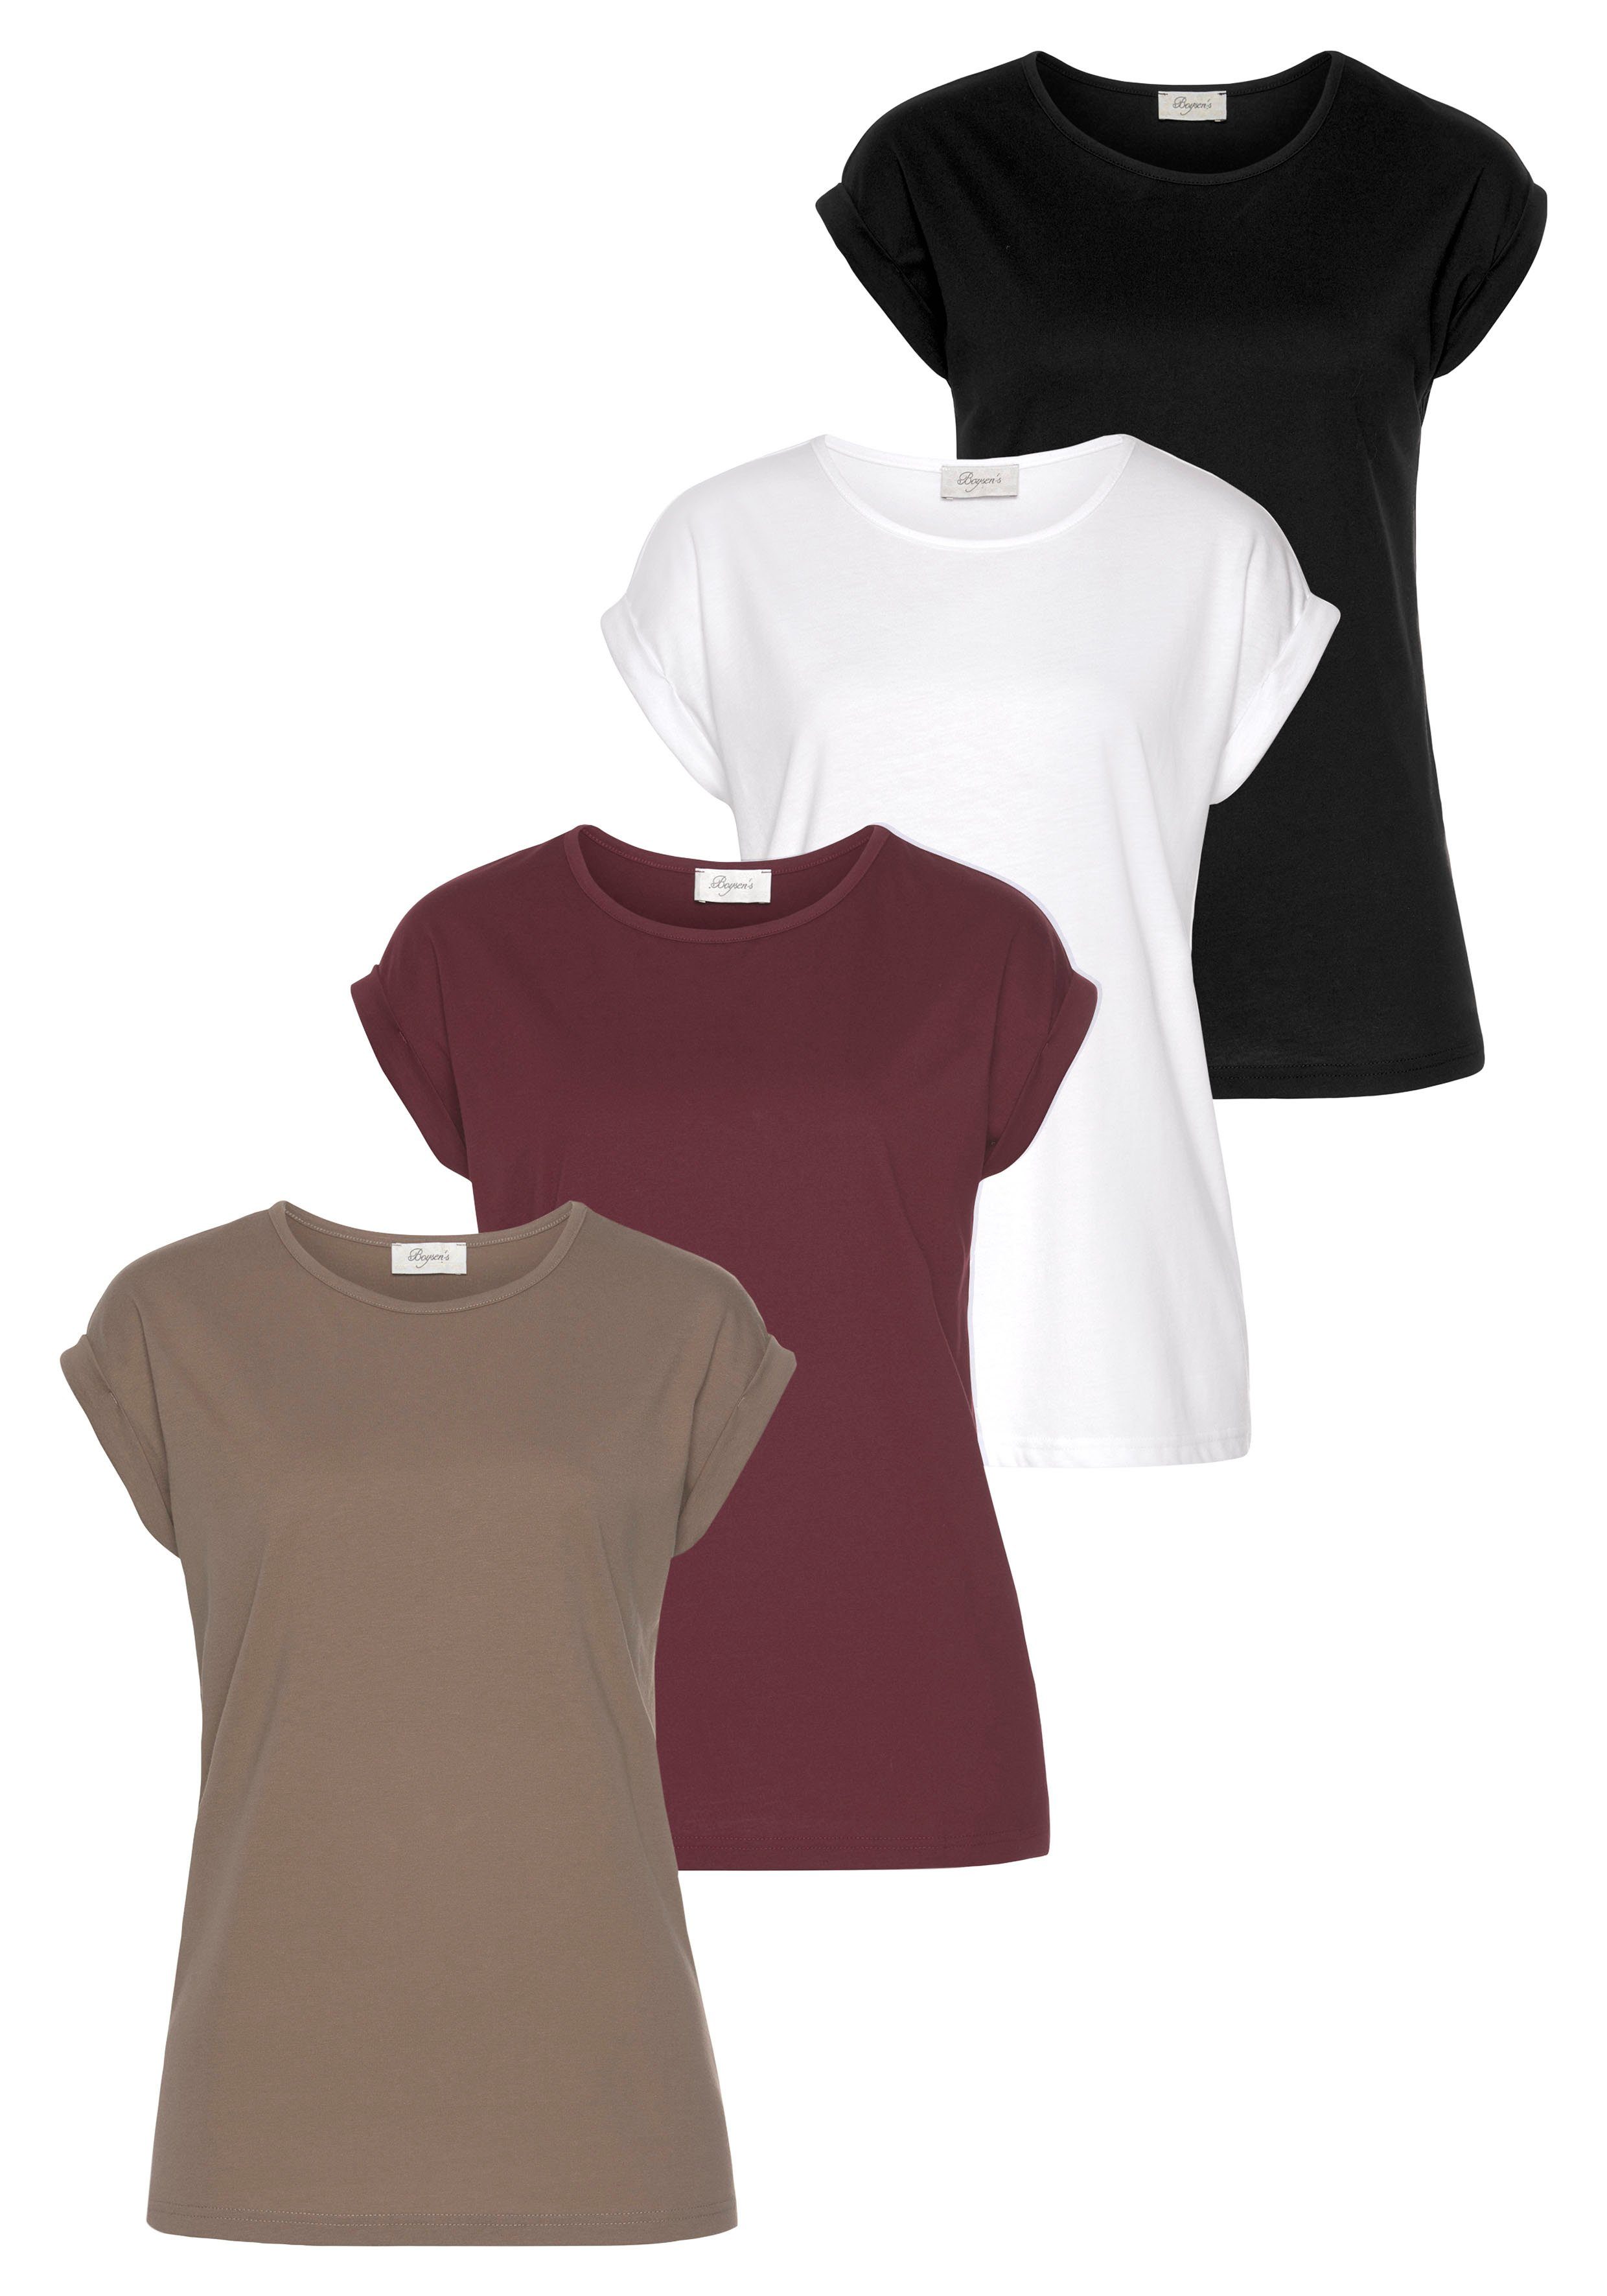 Boysen's T-Shirt (Packung) im 4er Pack taupe, bordeaux, weiß, schwarz